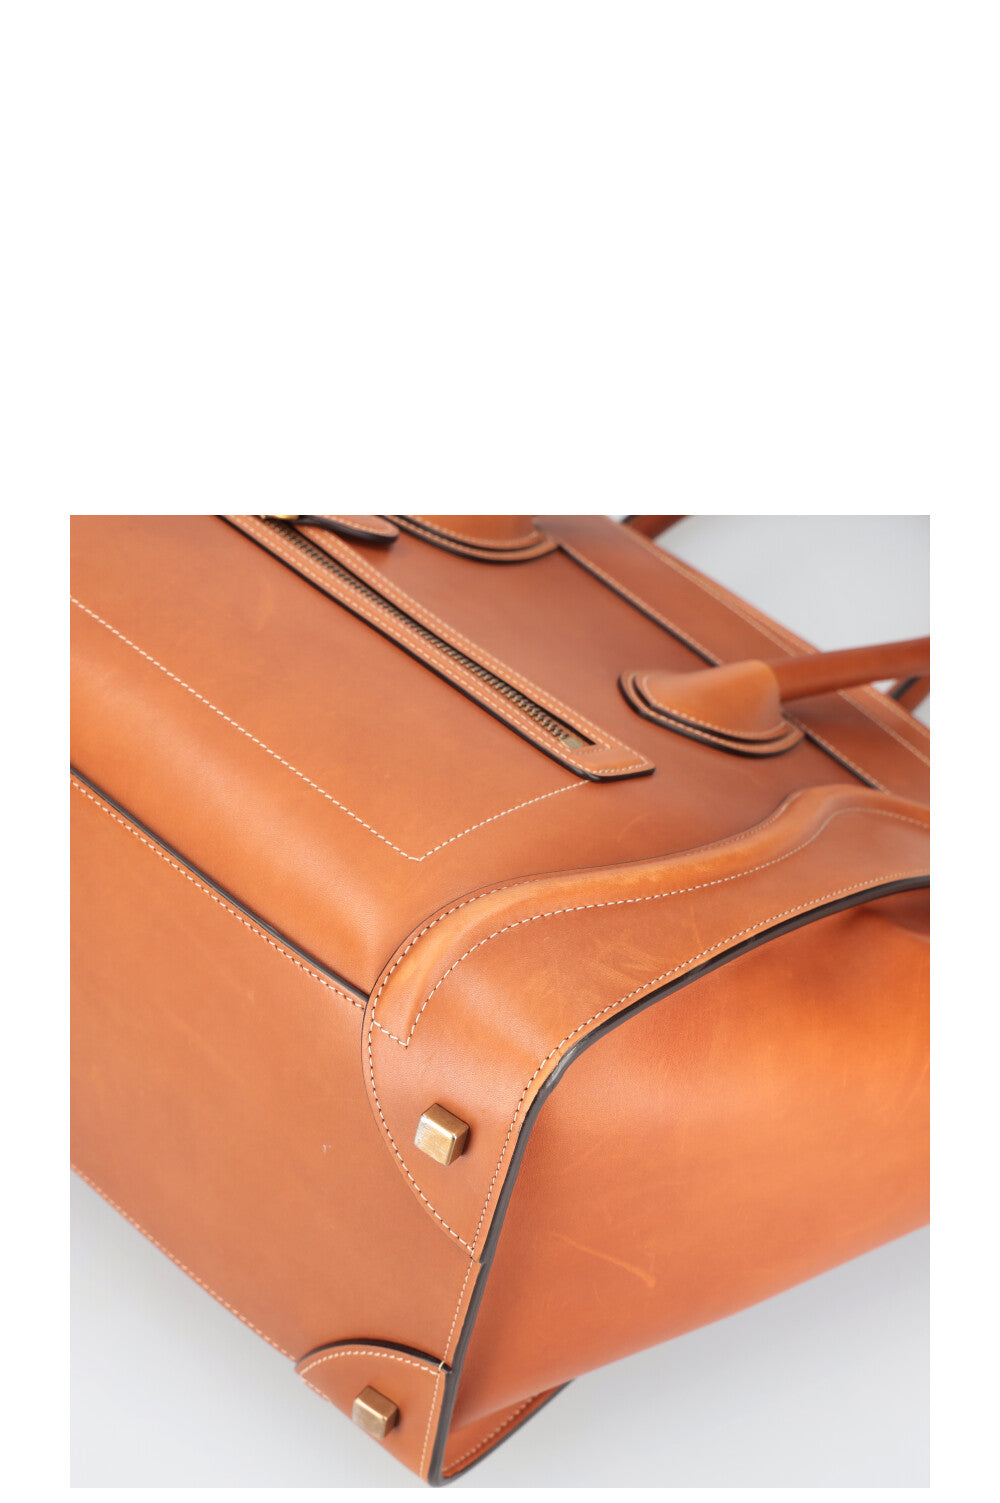 CÉLINE Mini Luggage Natural Calfskin Tan